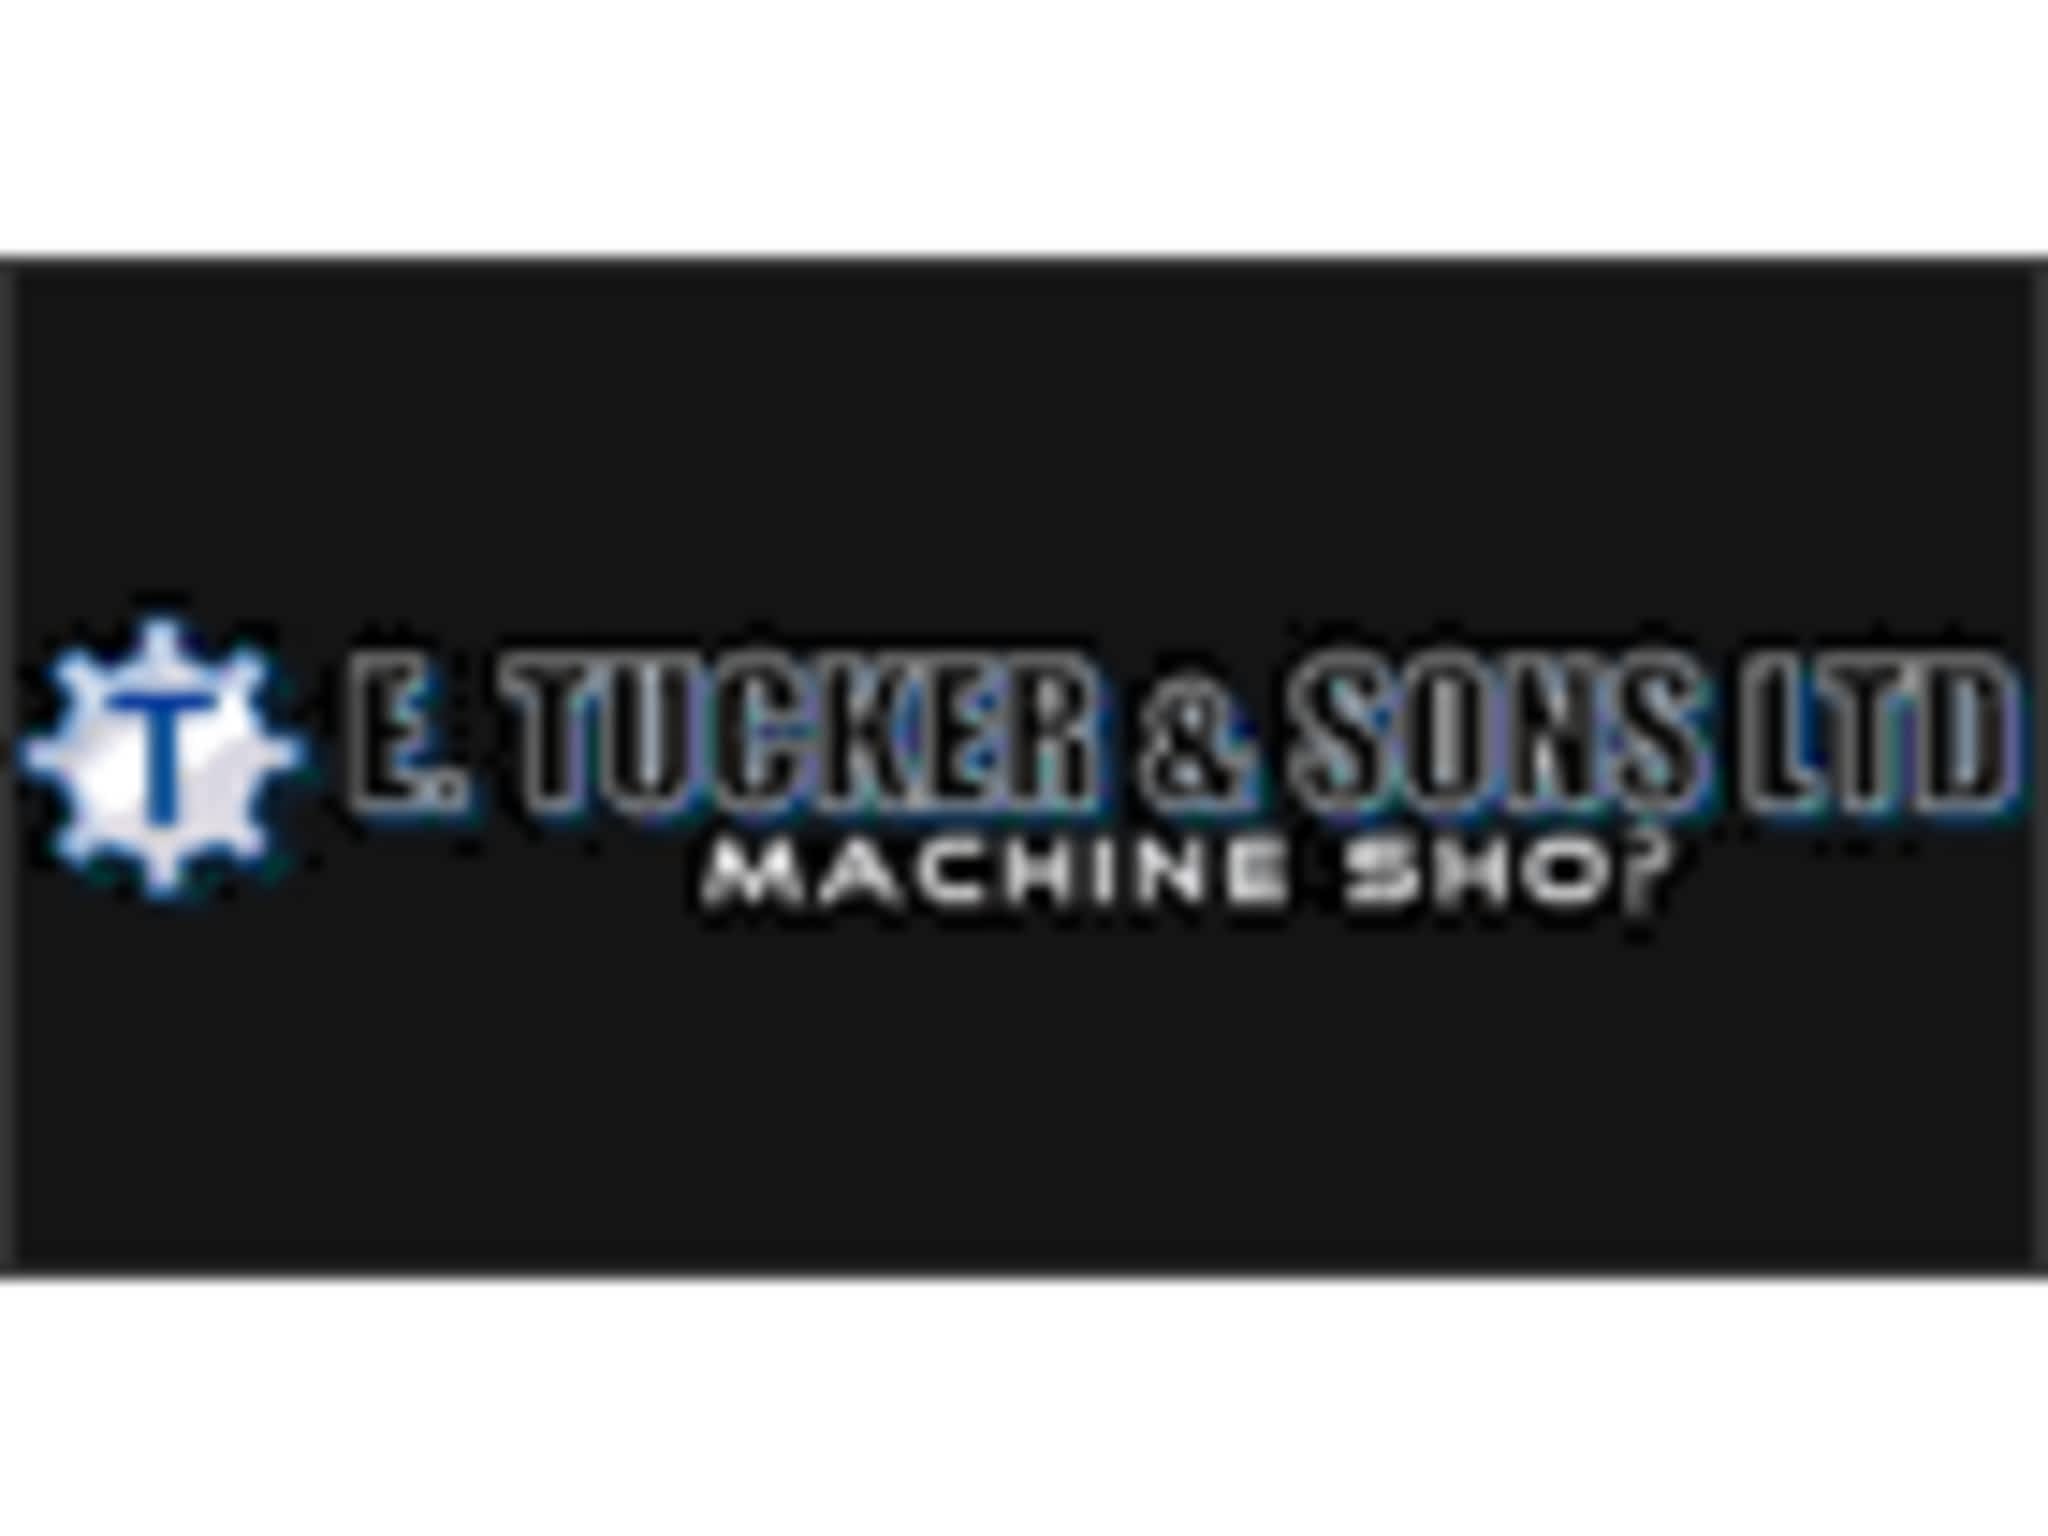 photo E Tucker & Sons Ltd